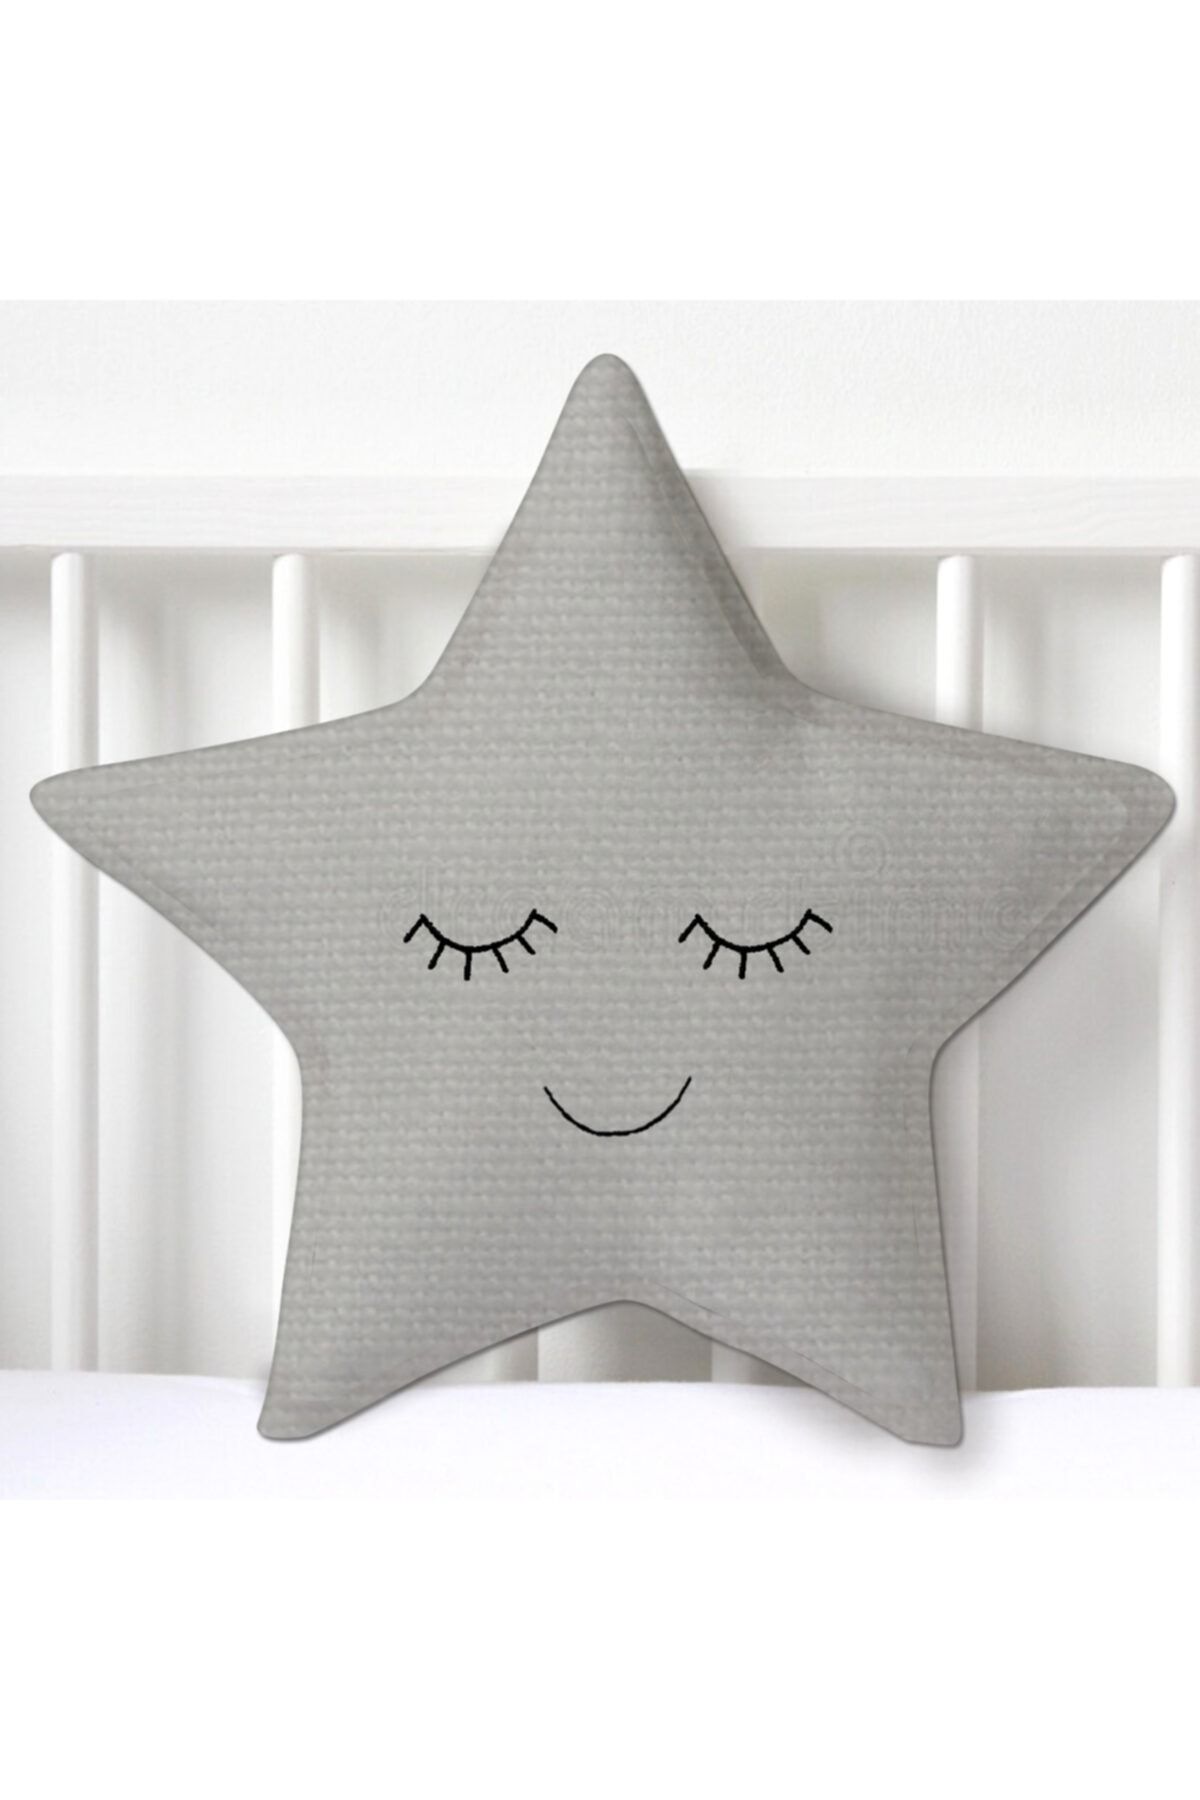 Miomundo Bebek & Çocuk Odası Yıldız Dekoratif Yastık Uyku Arkadaşı Gri